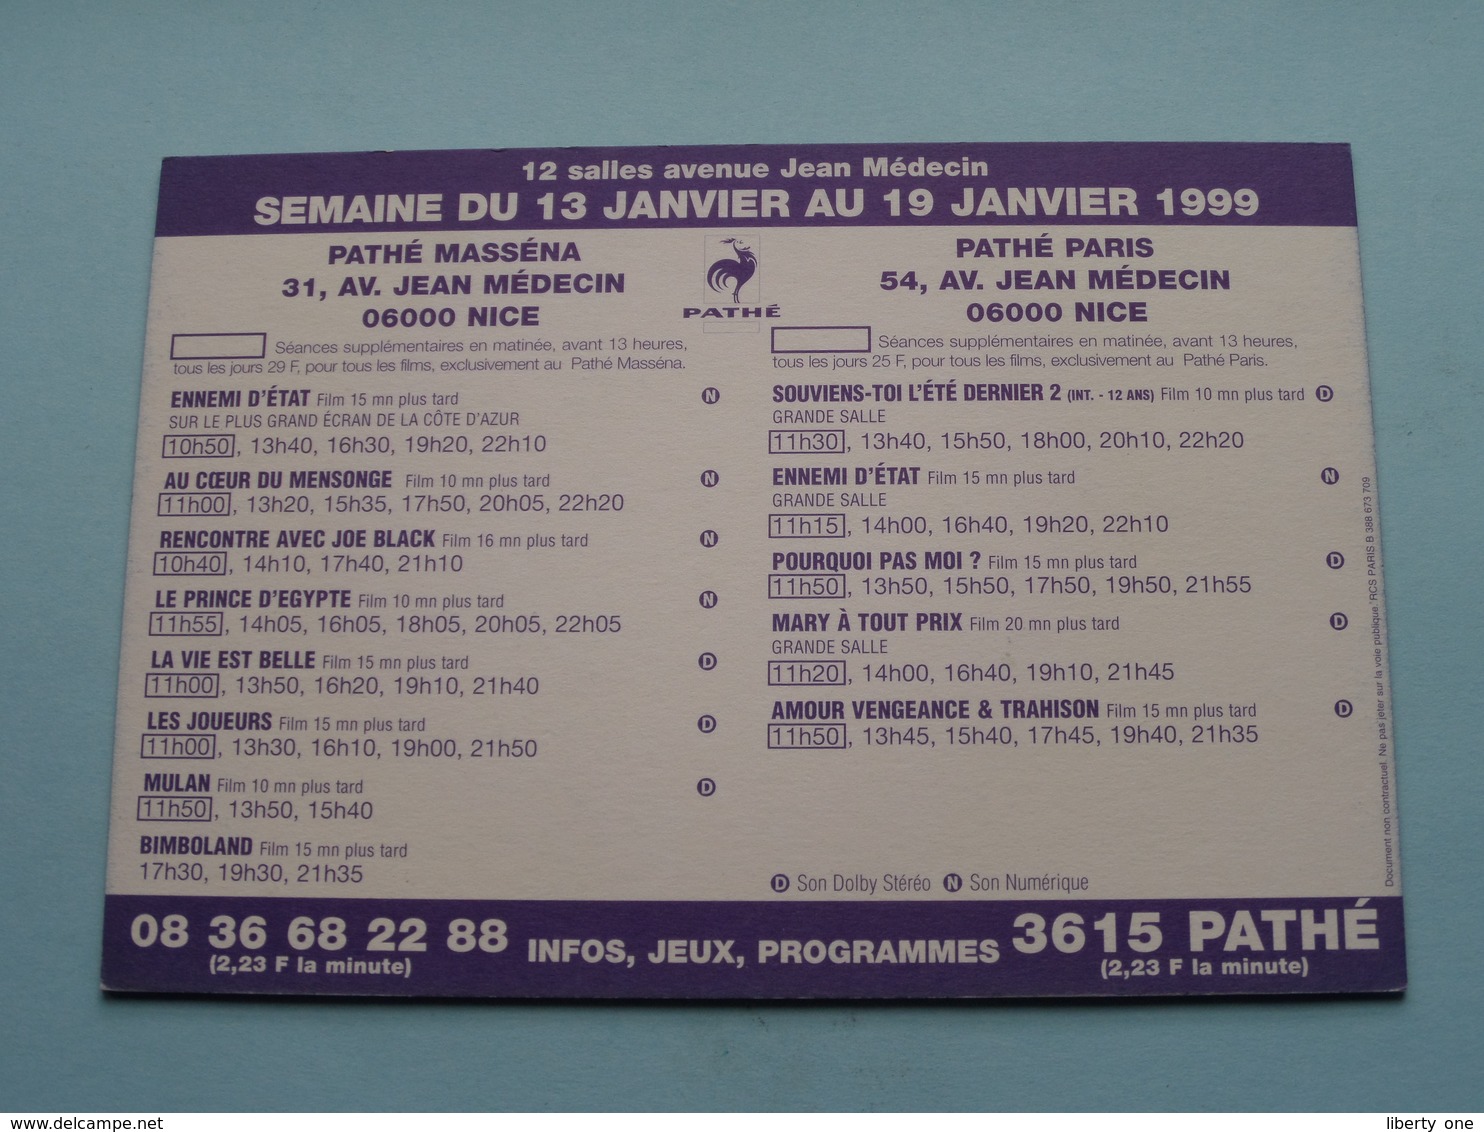 VOUS AVEZ UN MESS@GE > Pathé NICE ( Programme ) 1999 ( Voir Photo > 2 Scan ) ! - Publicidad